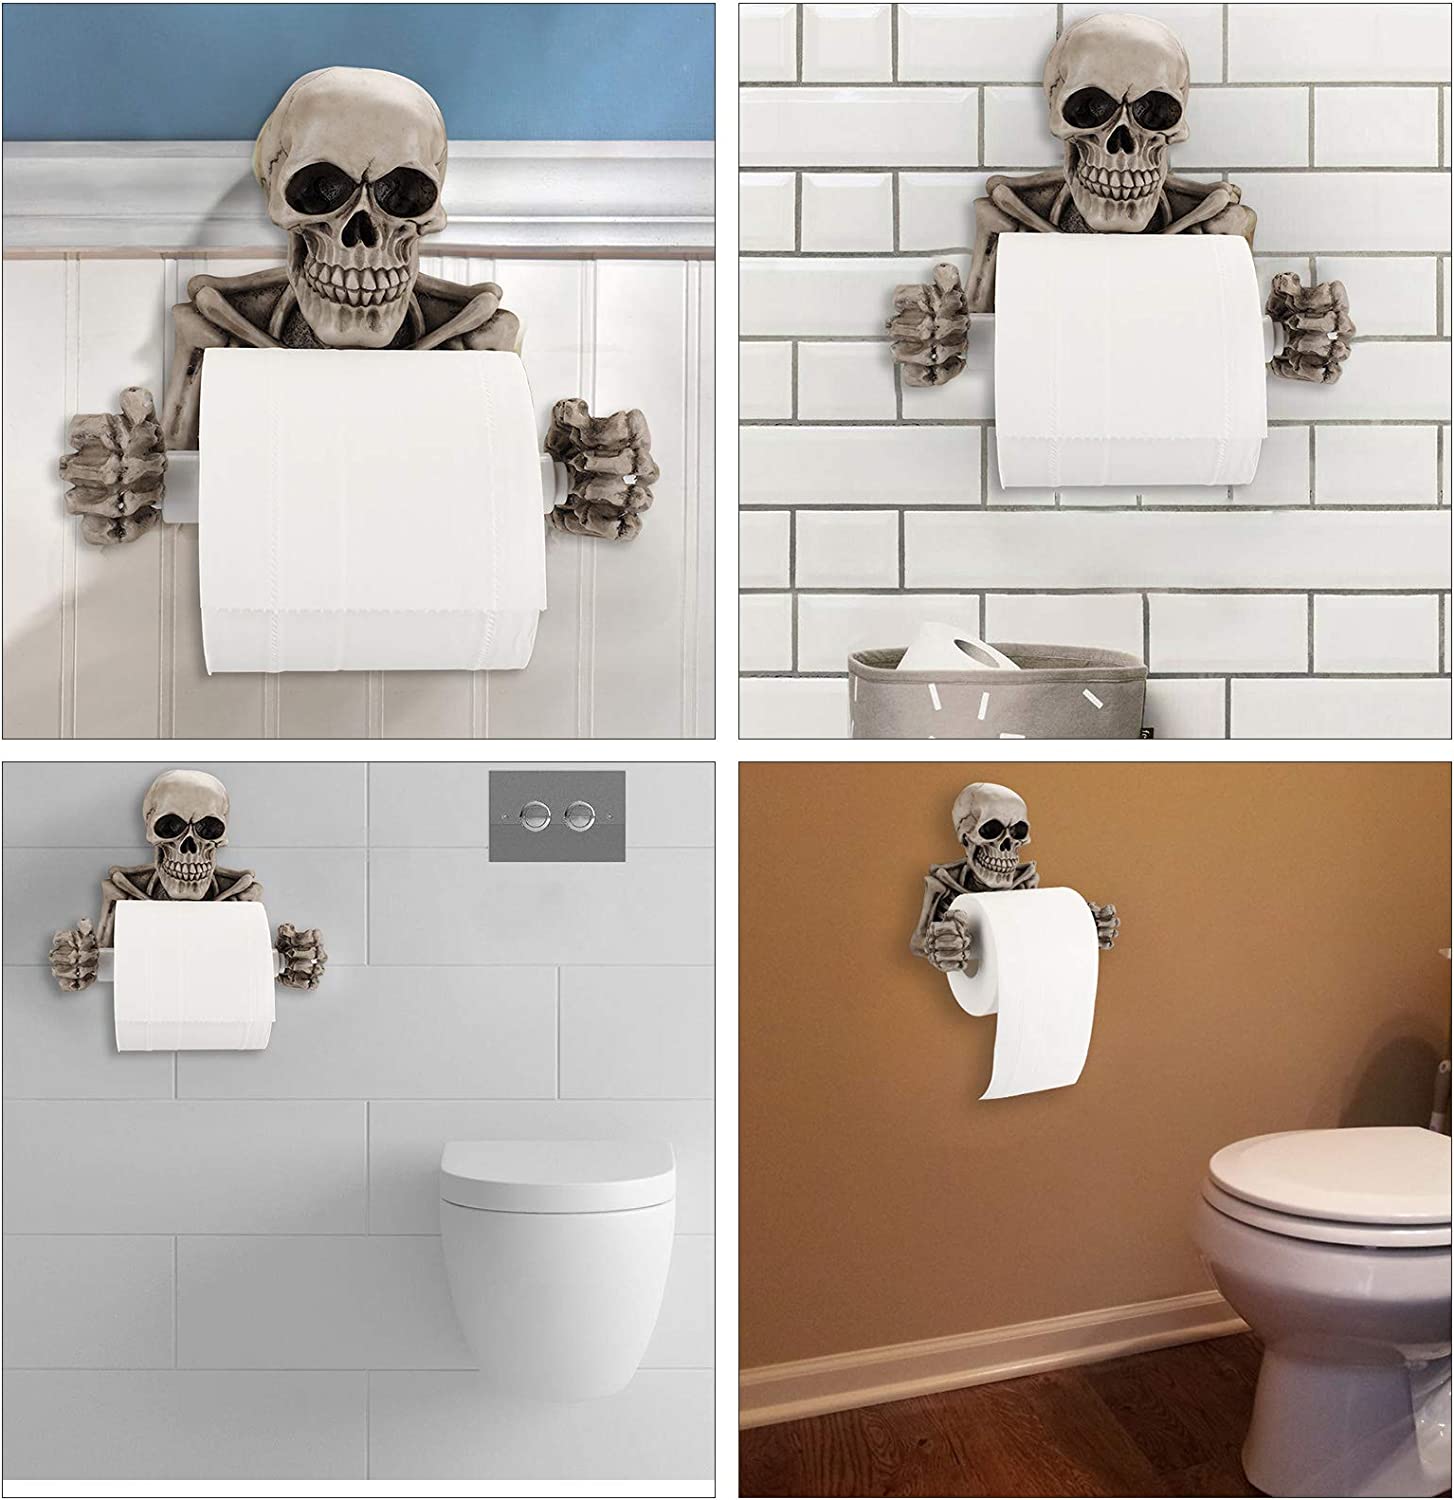 Skull Halloween Skeleton Bathroom Toilet Paper Holder Scary Decor